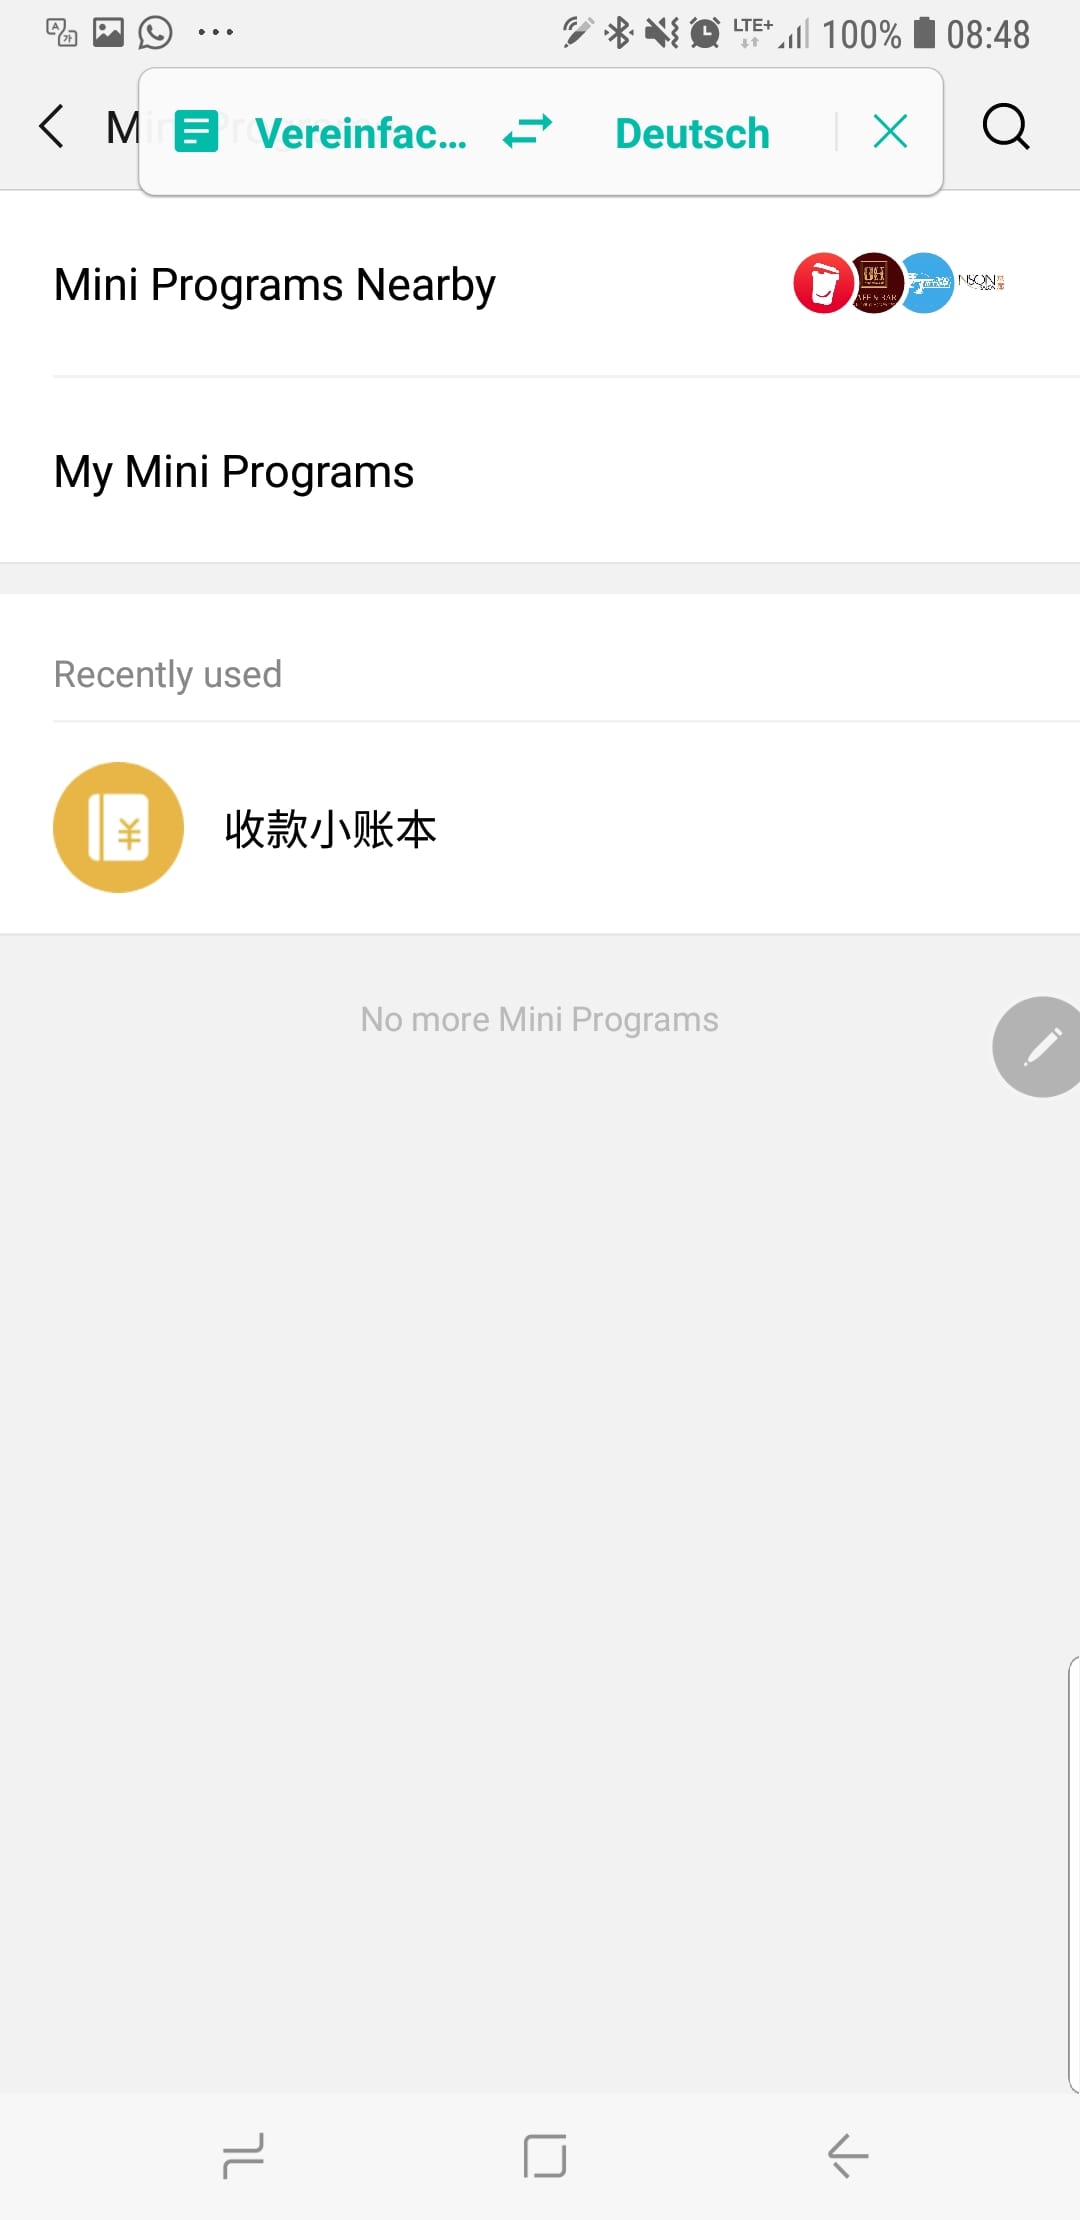 Vieles in WeChat ist auf chinesisch